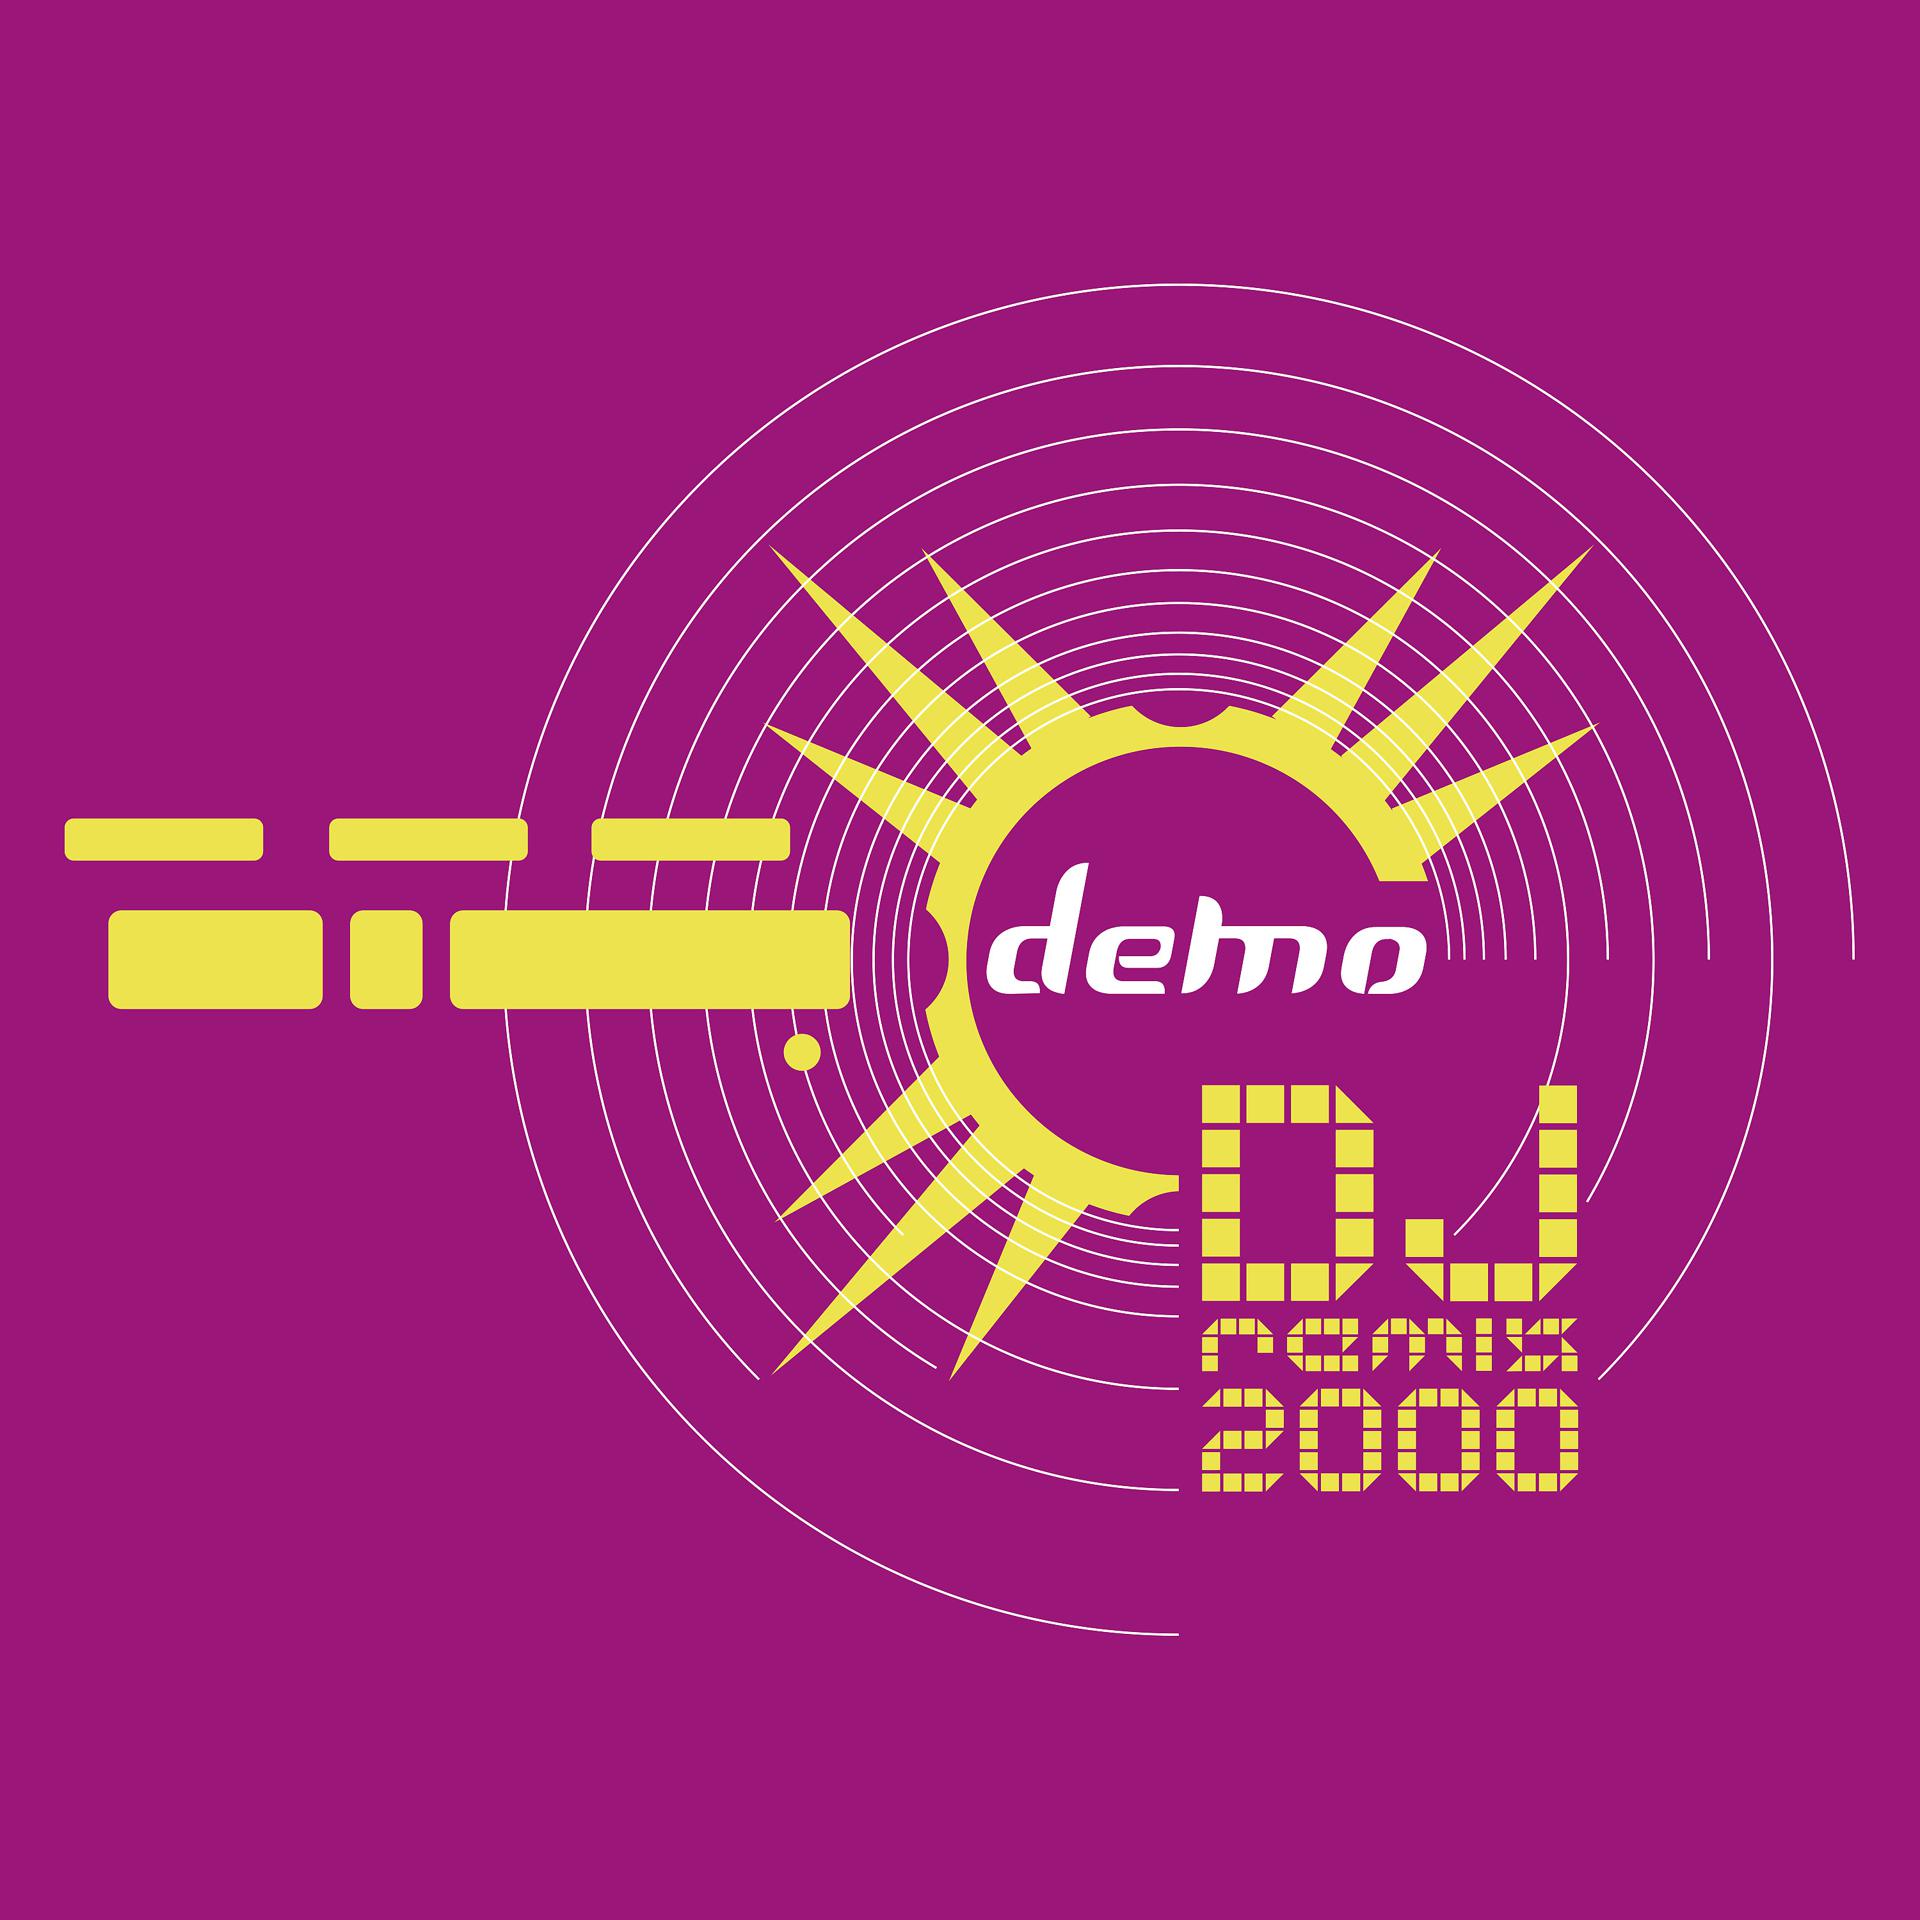 Демо 2000. DJ Remix 2000 демо. Демо альбомы 2000. Demo 2000 лет. Demos 2000